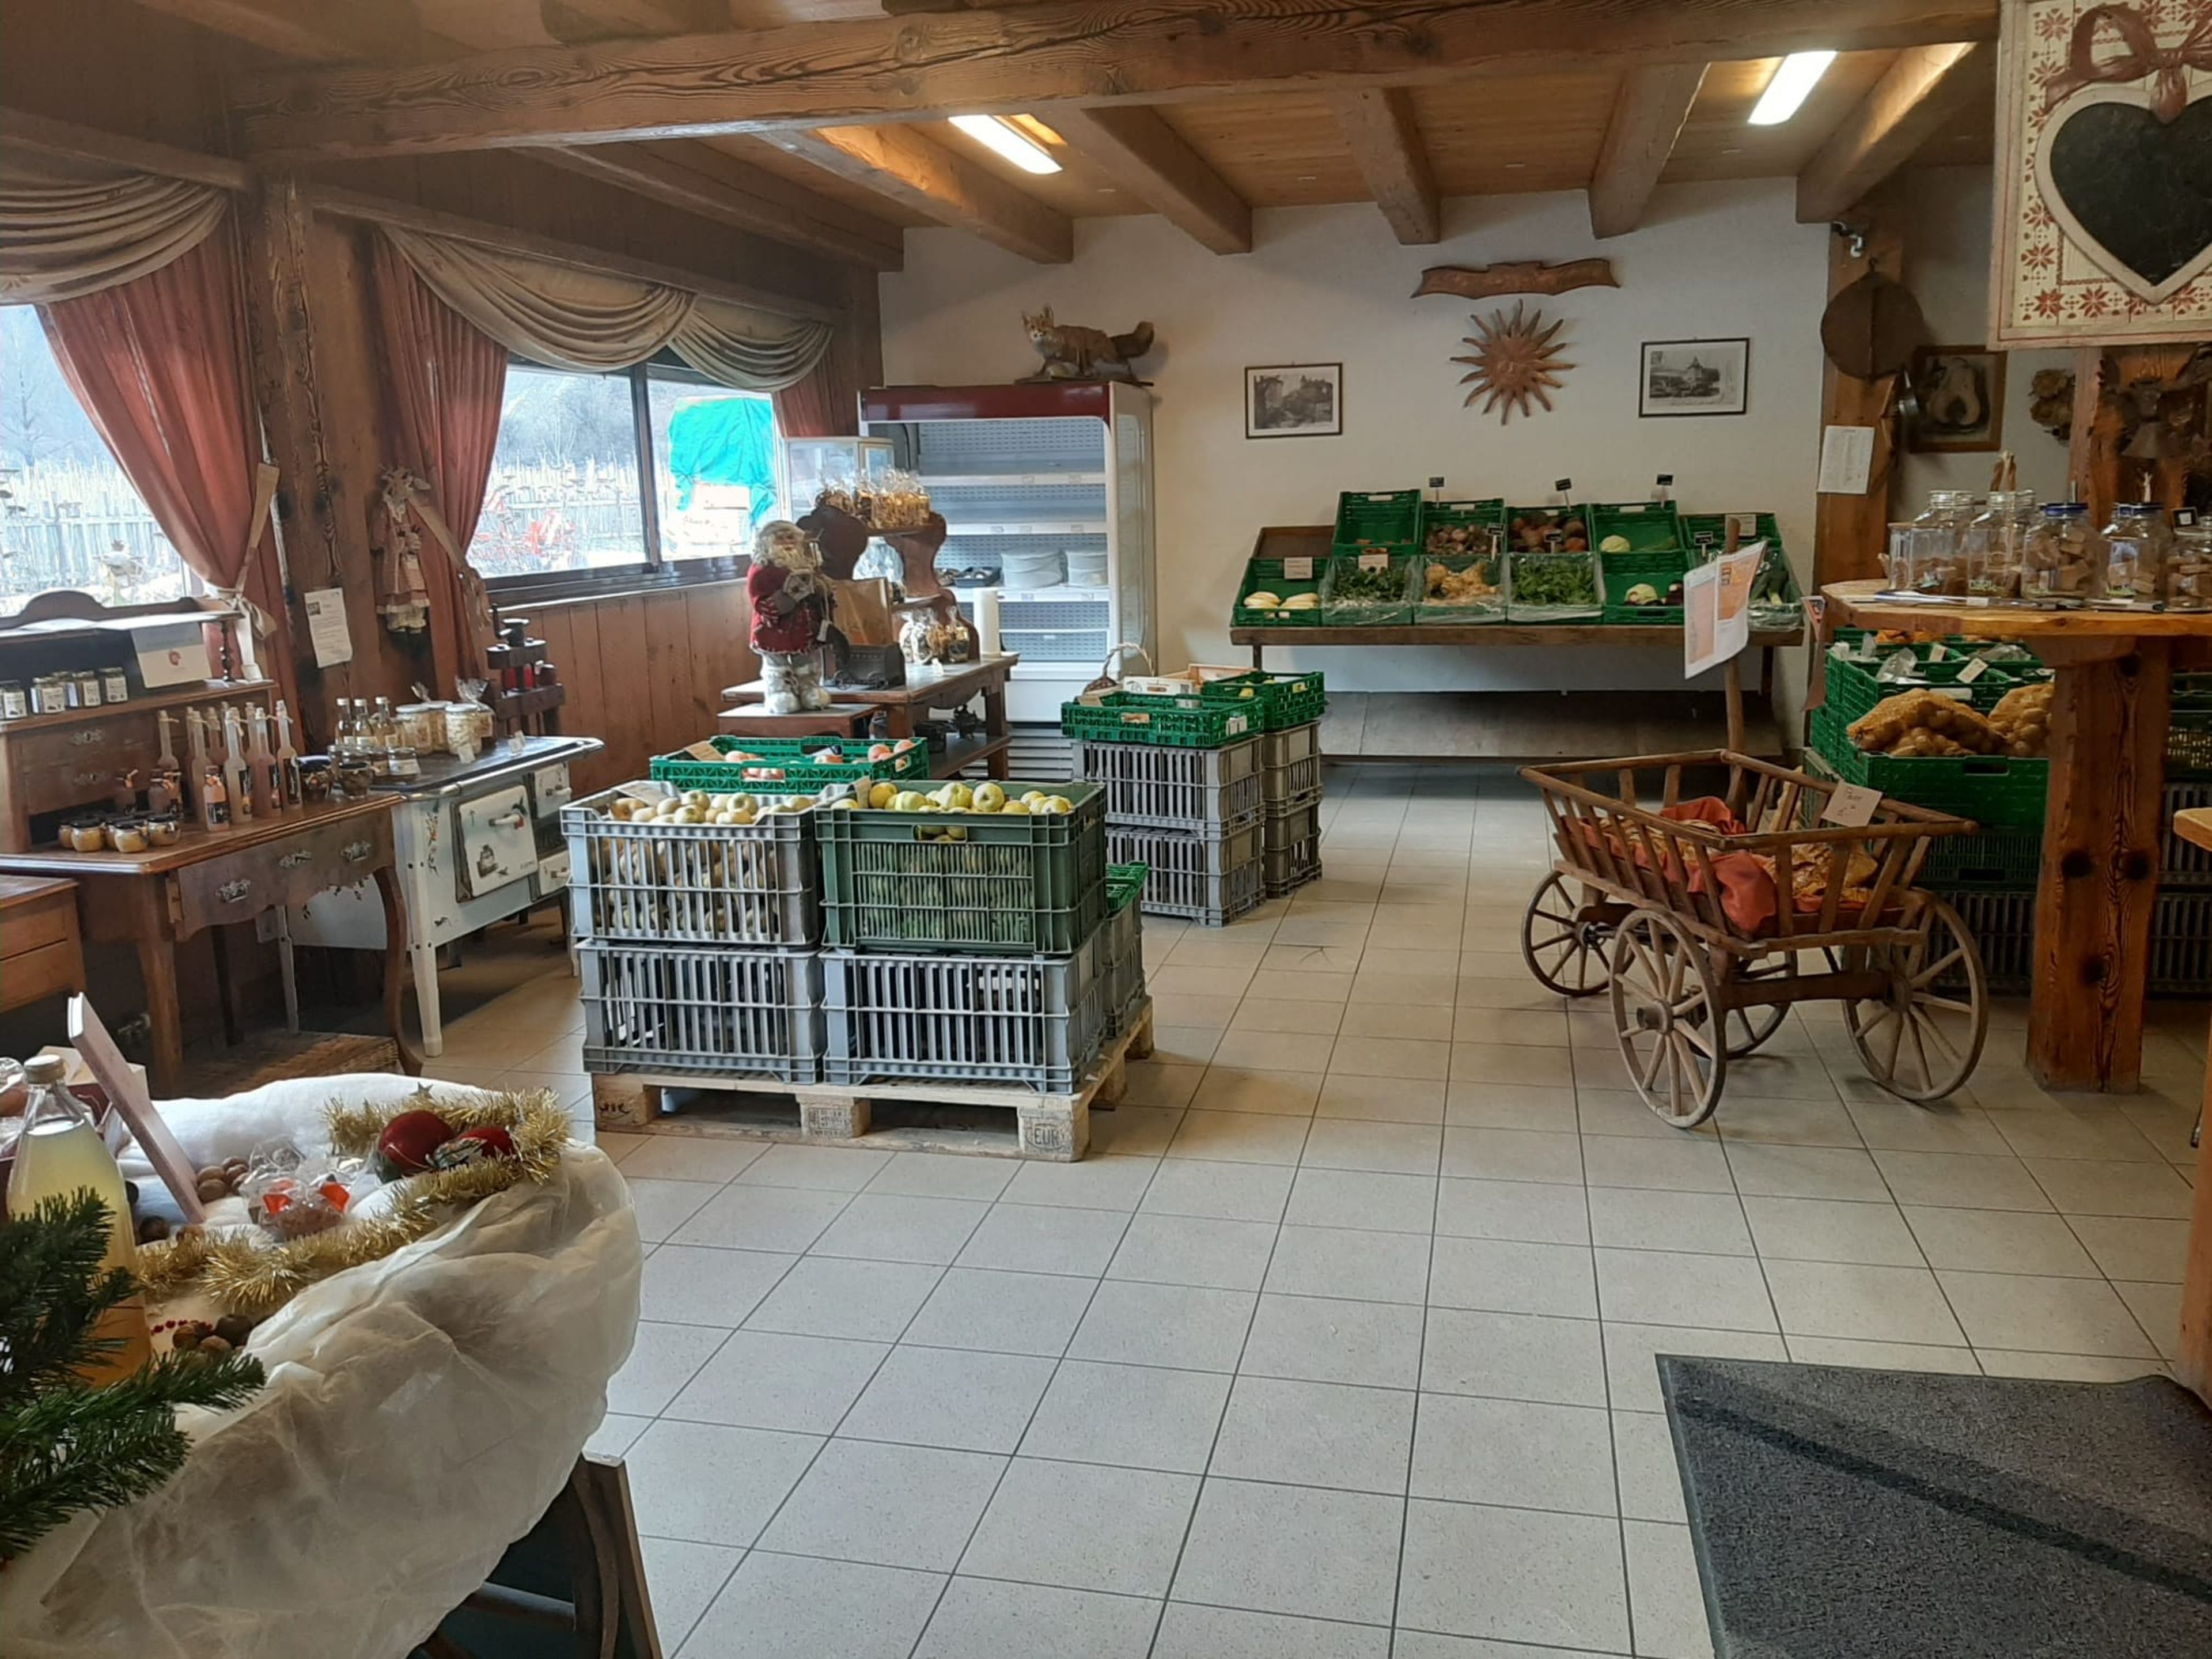 Vente directe de fruits et de légumes en Valais. Les vergers du soleil. Valais, Suisse